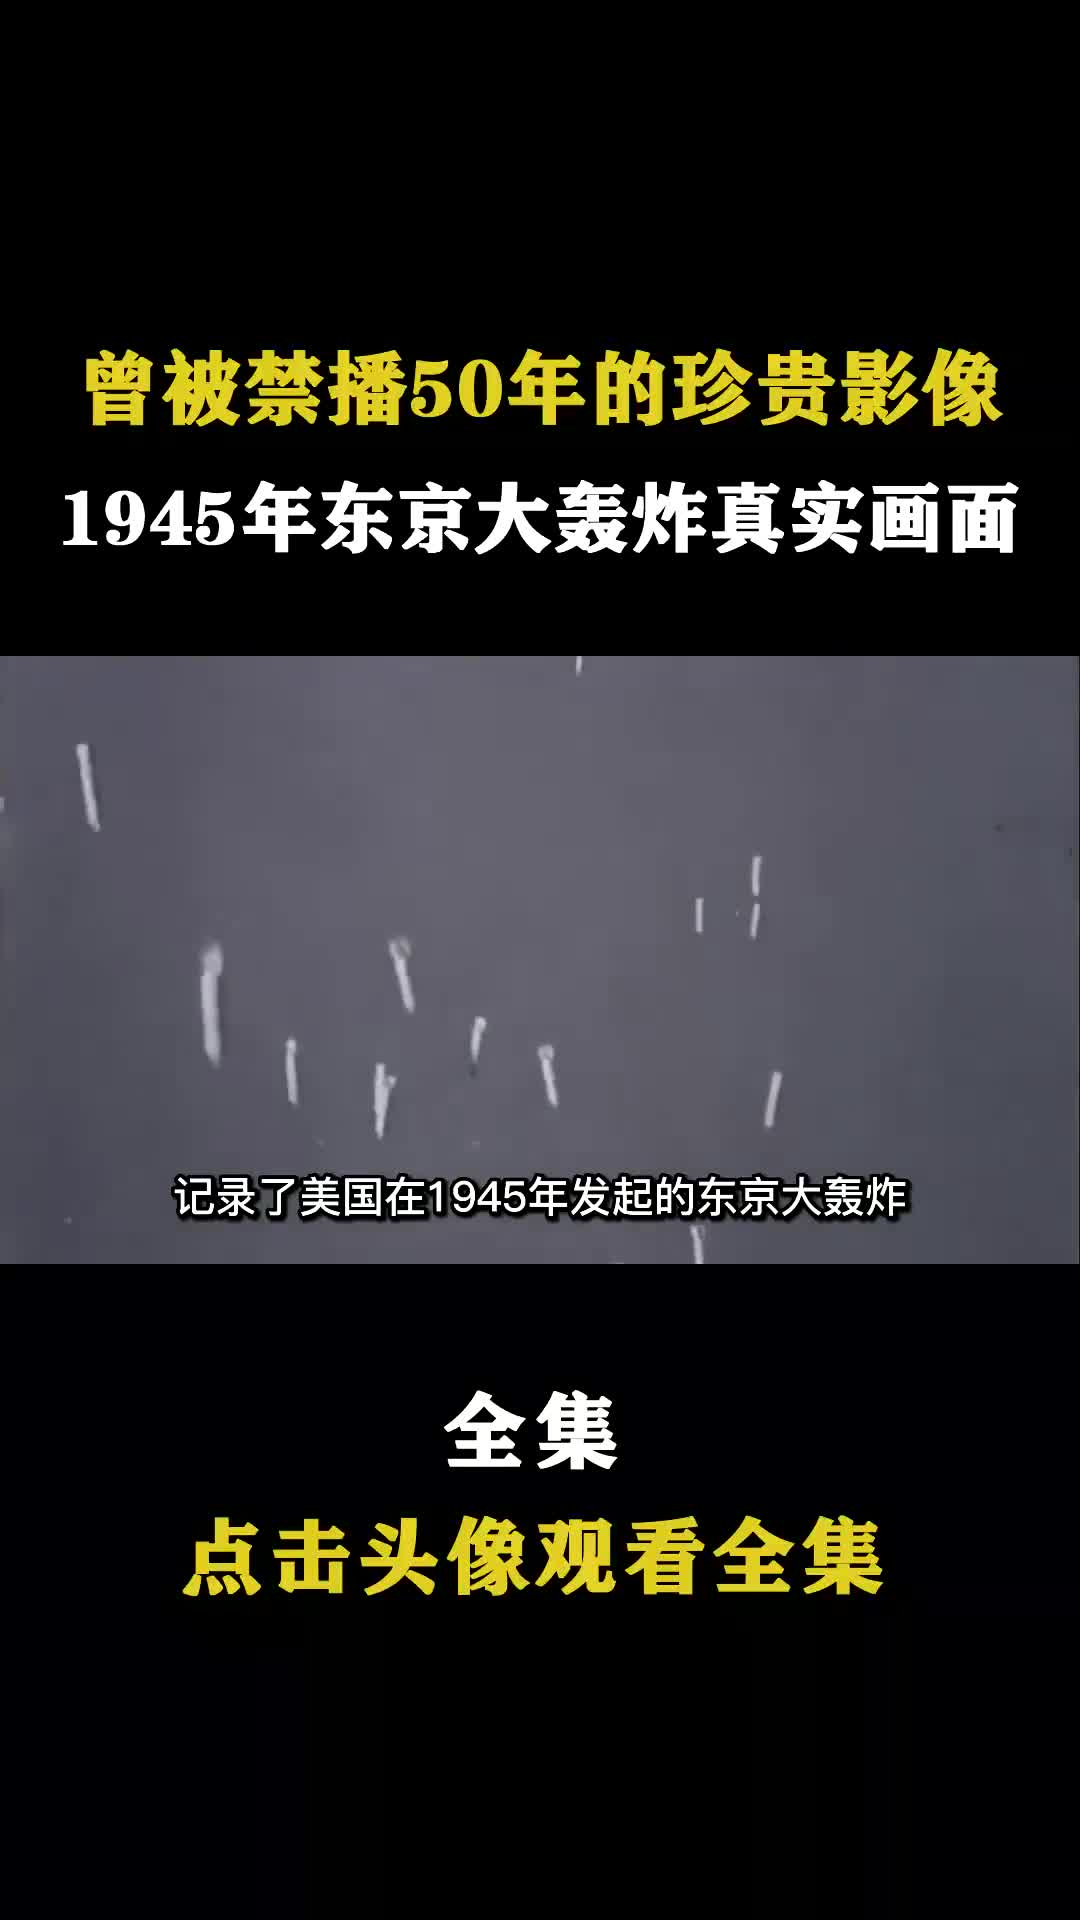 东京大轰炸真实影像,几十万日本人被活活烧死,数百万人无家可归